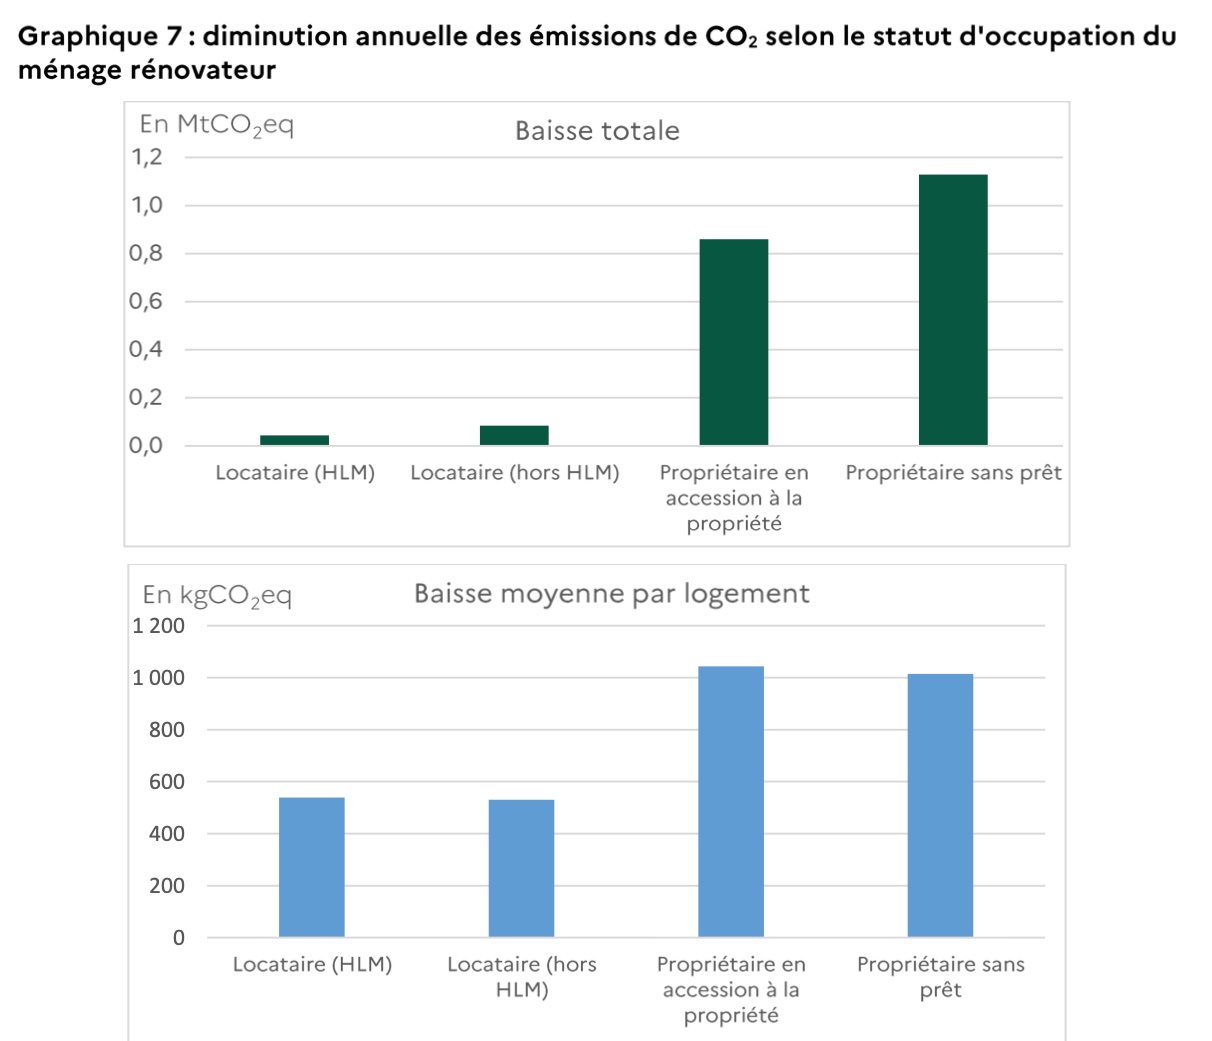 Graphique 8 : diminution annuelle des émissions de CO2 selon les revenus disponibles (par UC) des occupants du ménage